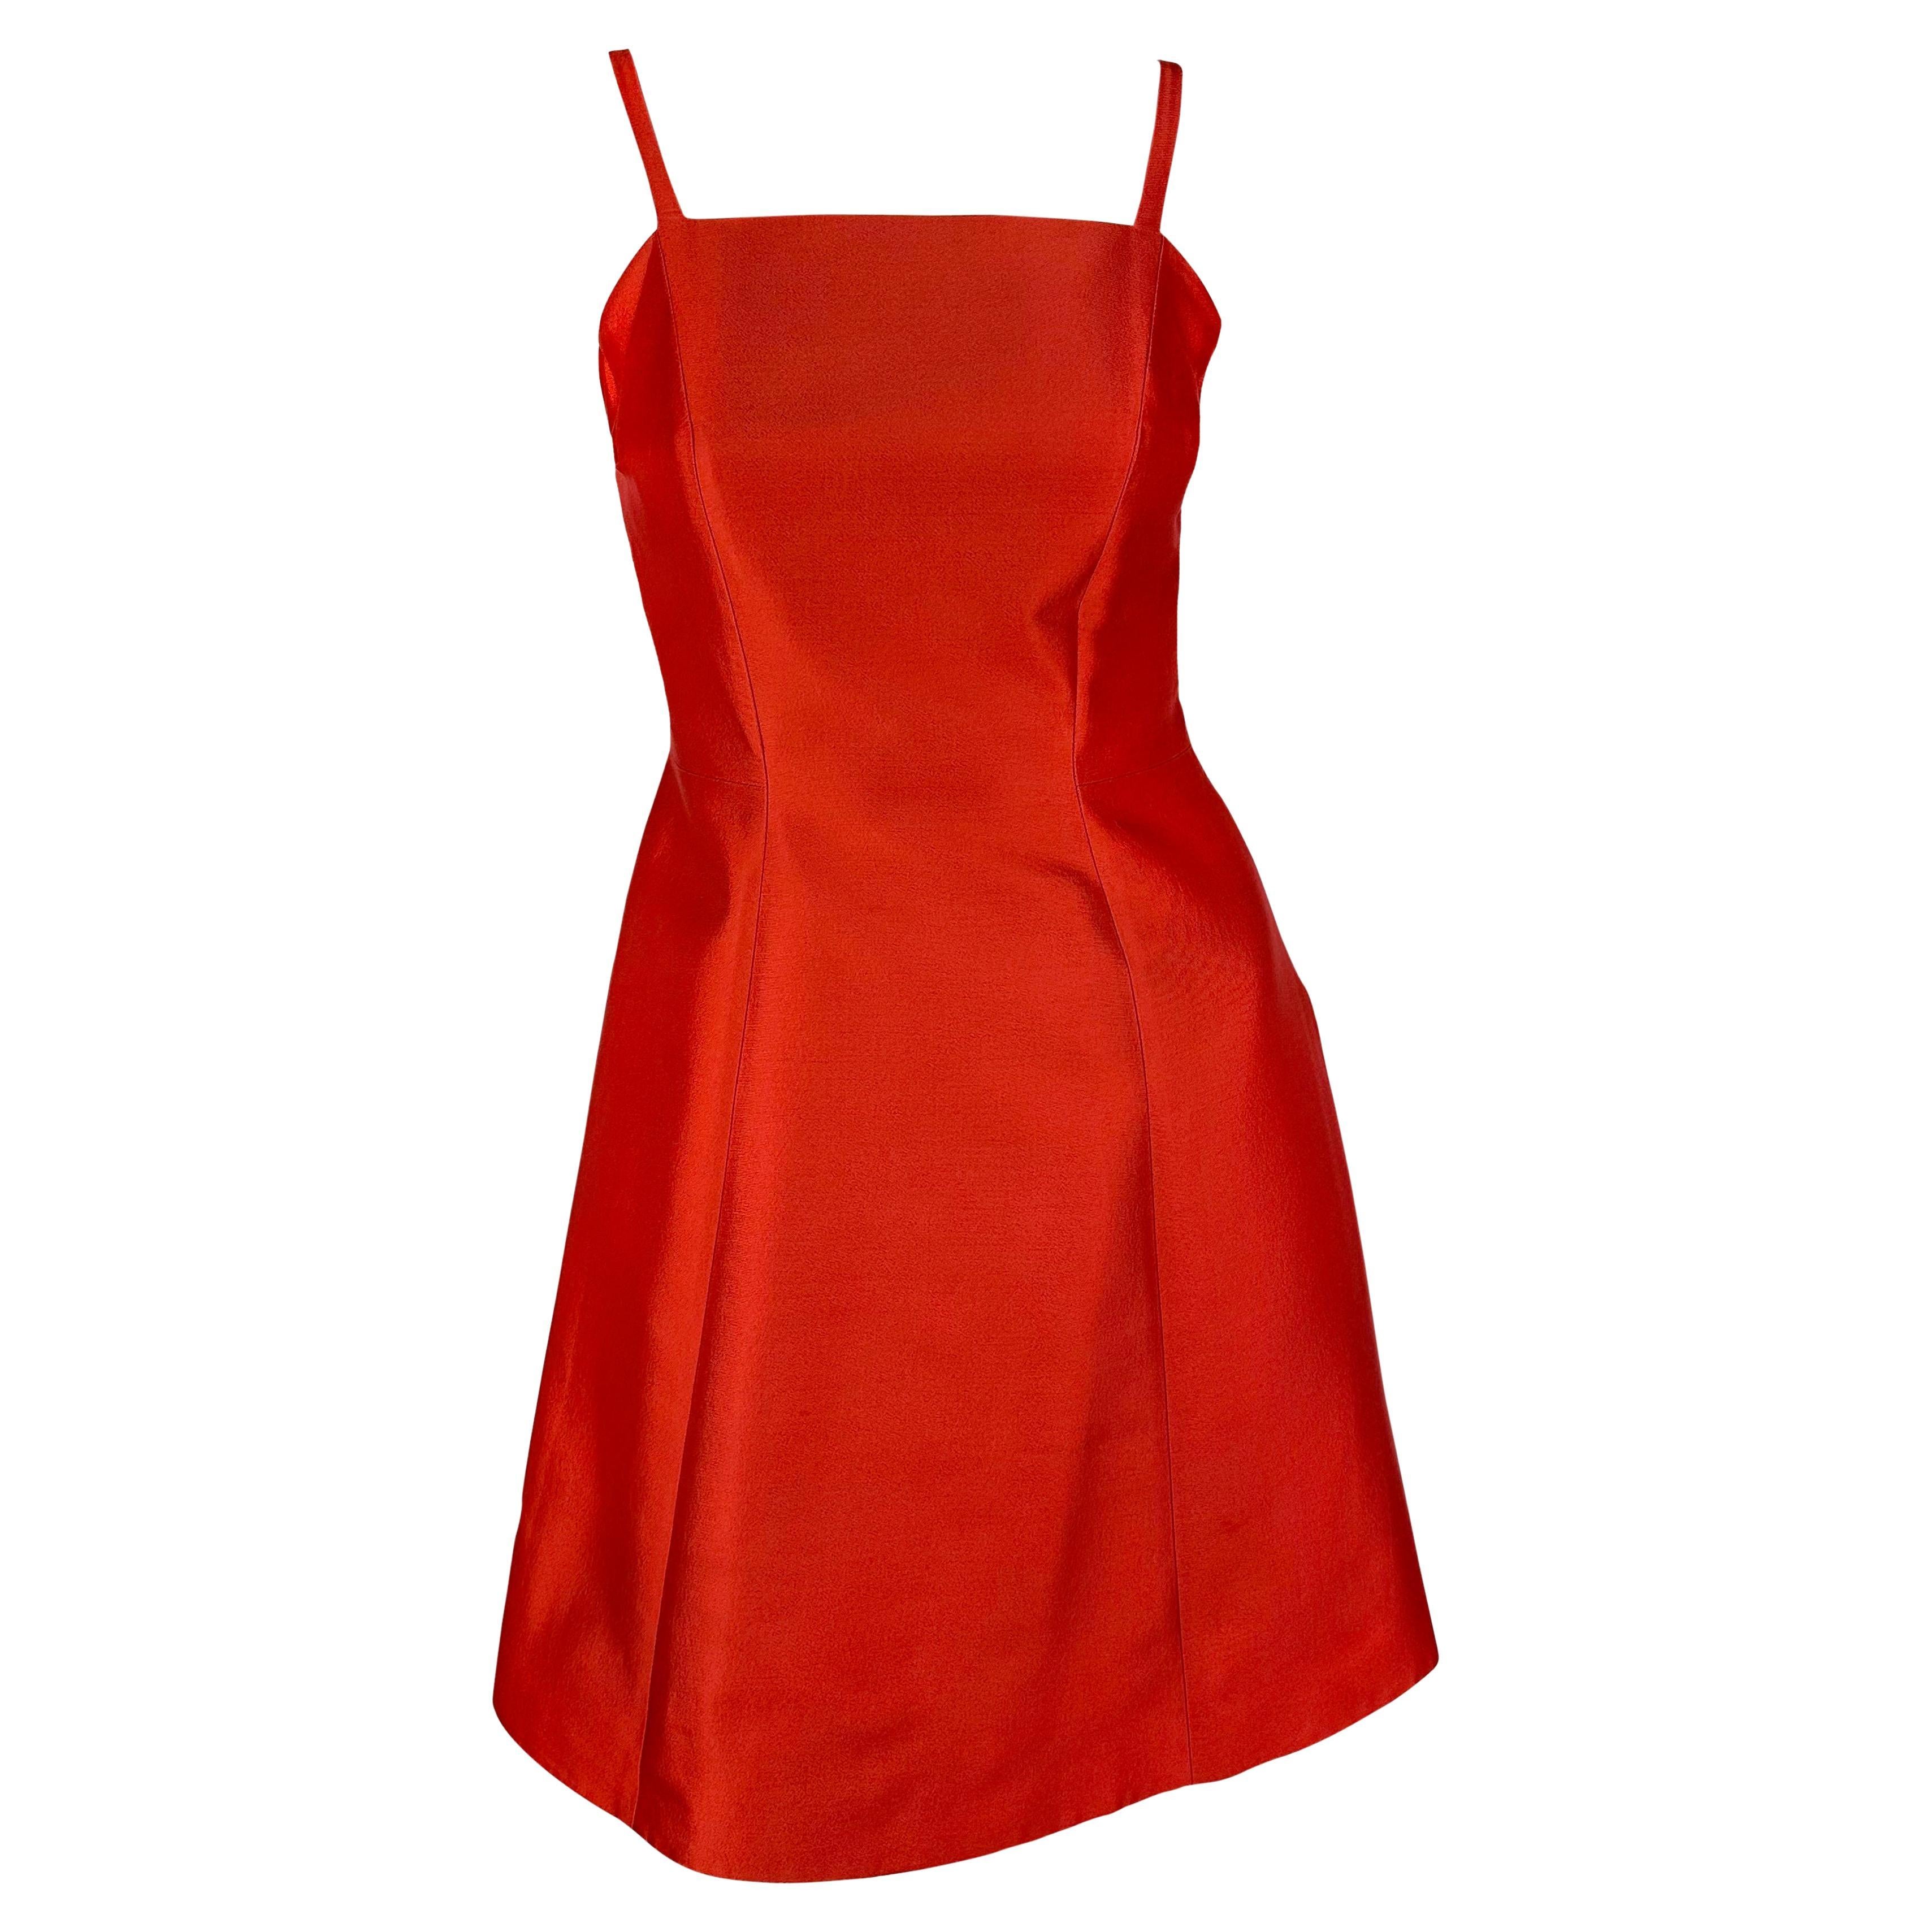 F/W 1995 Prada Kate Moss Runway Red Silk Wool Taffeta Flare Cocktail Dress